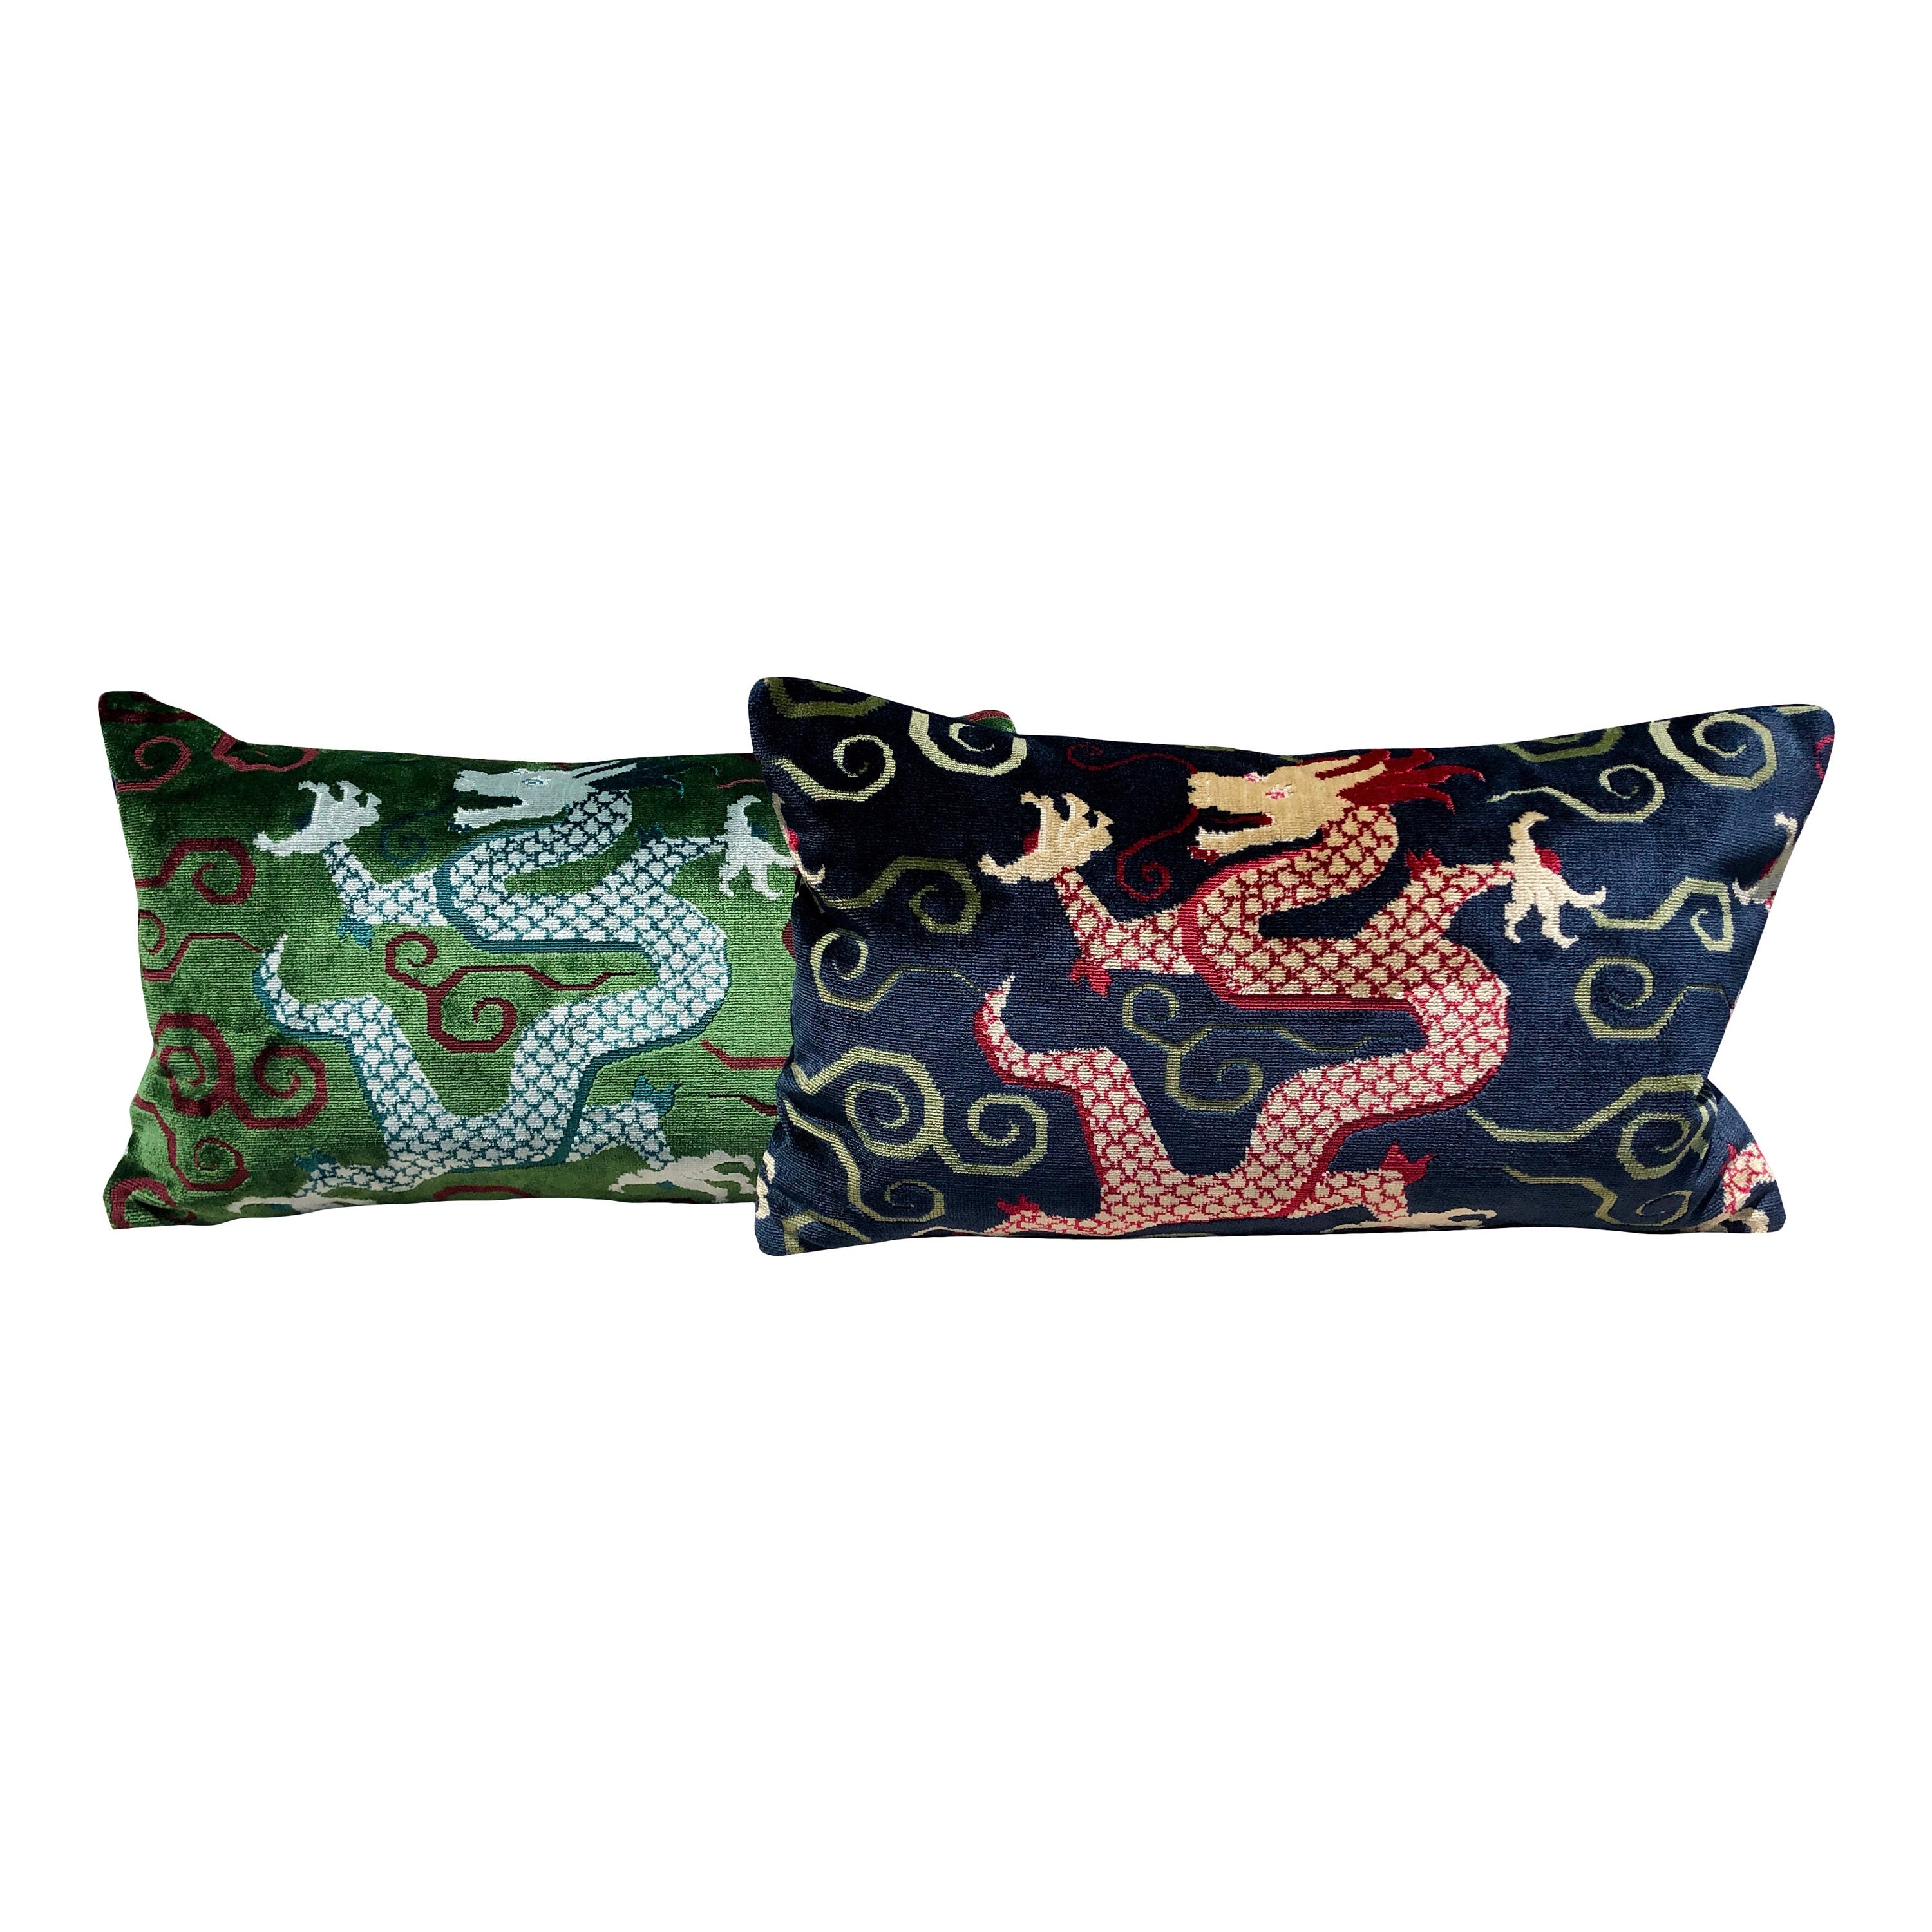 Schumacher Bixi Velvet Lumbar Pillow in Emerald Green. Dragon Velvet Pillow designer pillow cover high end cushion cover chinoiserie pillow